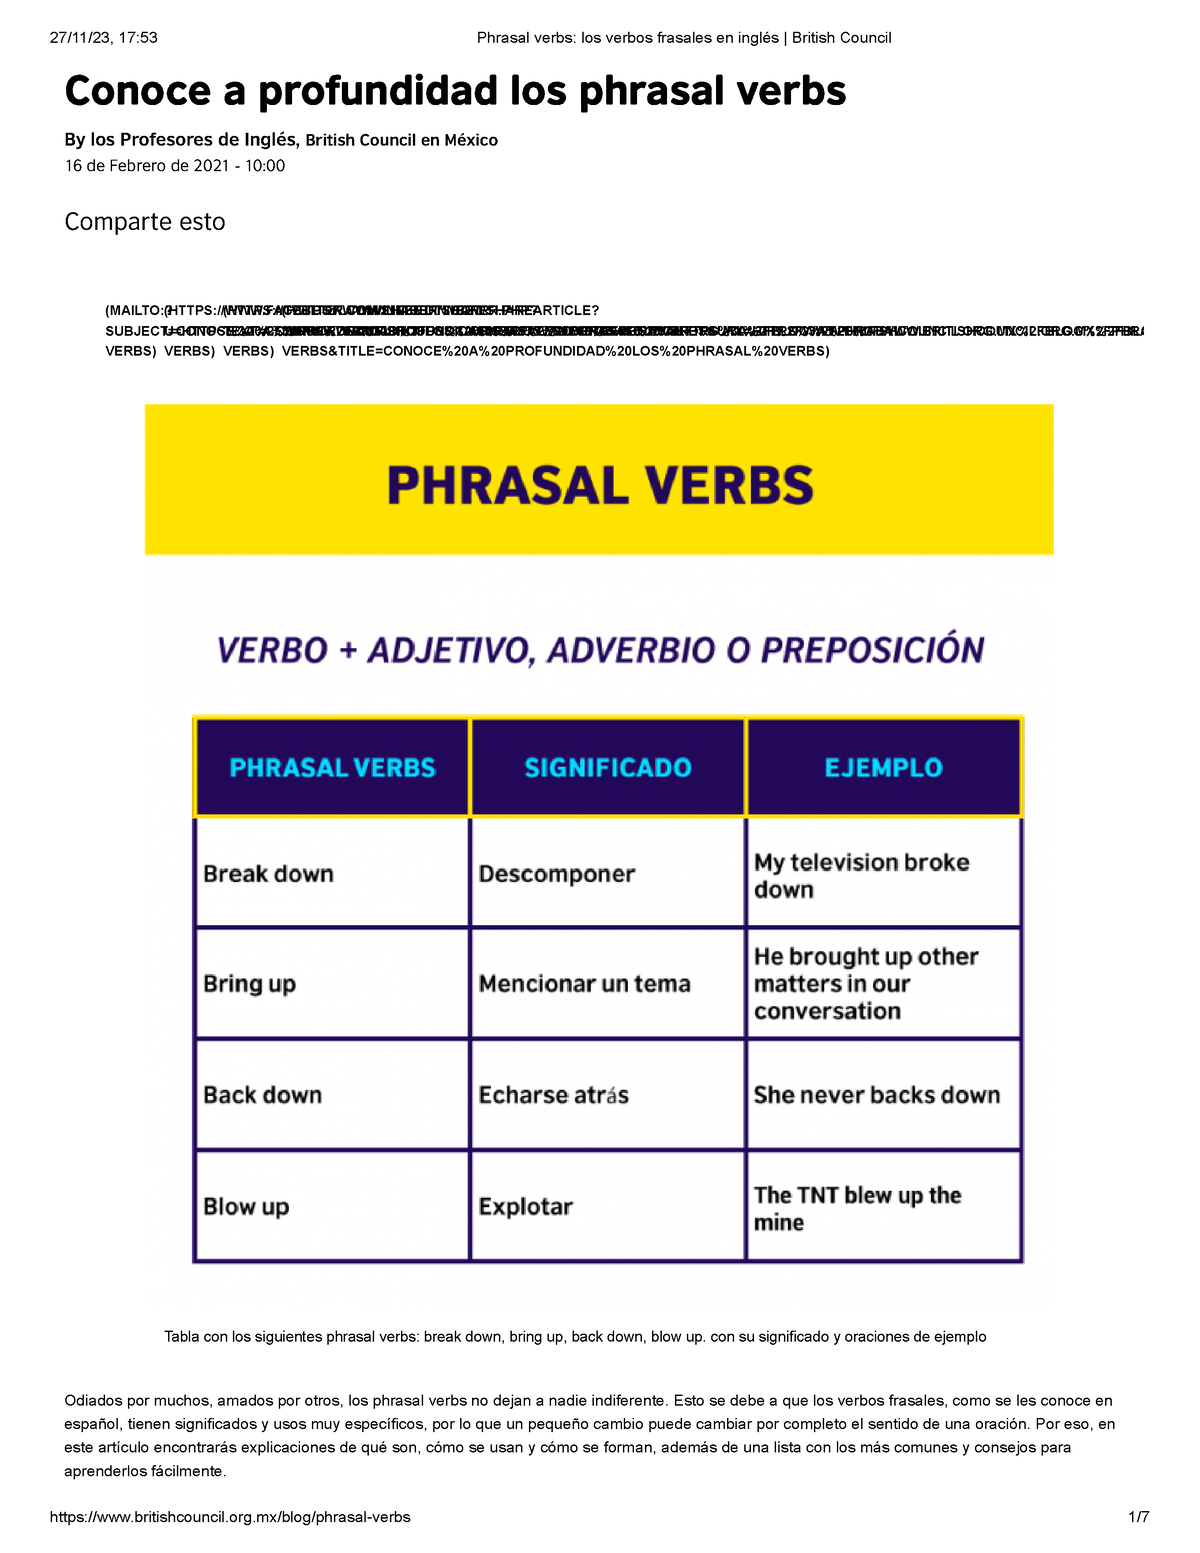 Academia Learning - ¿Conocíais el significado de estos phrasal verbs? 😉  Son algunos de los más utilizados en el inglés coloquial que os pueden ser  muy útiles 💡 Dejad en comentarios los